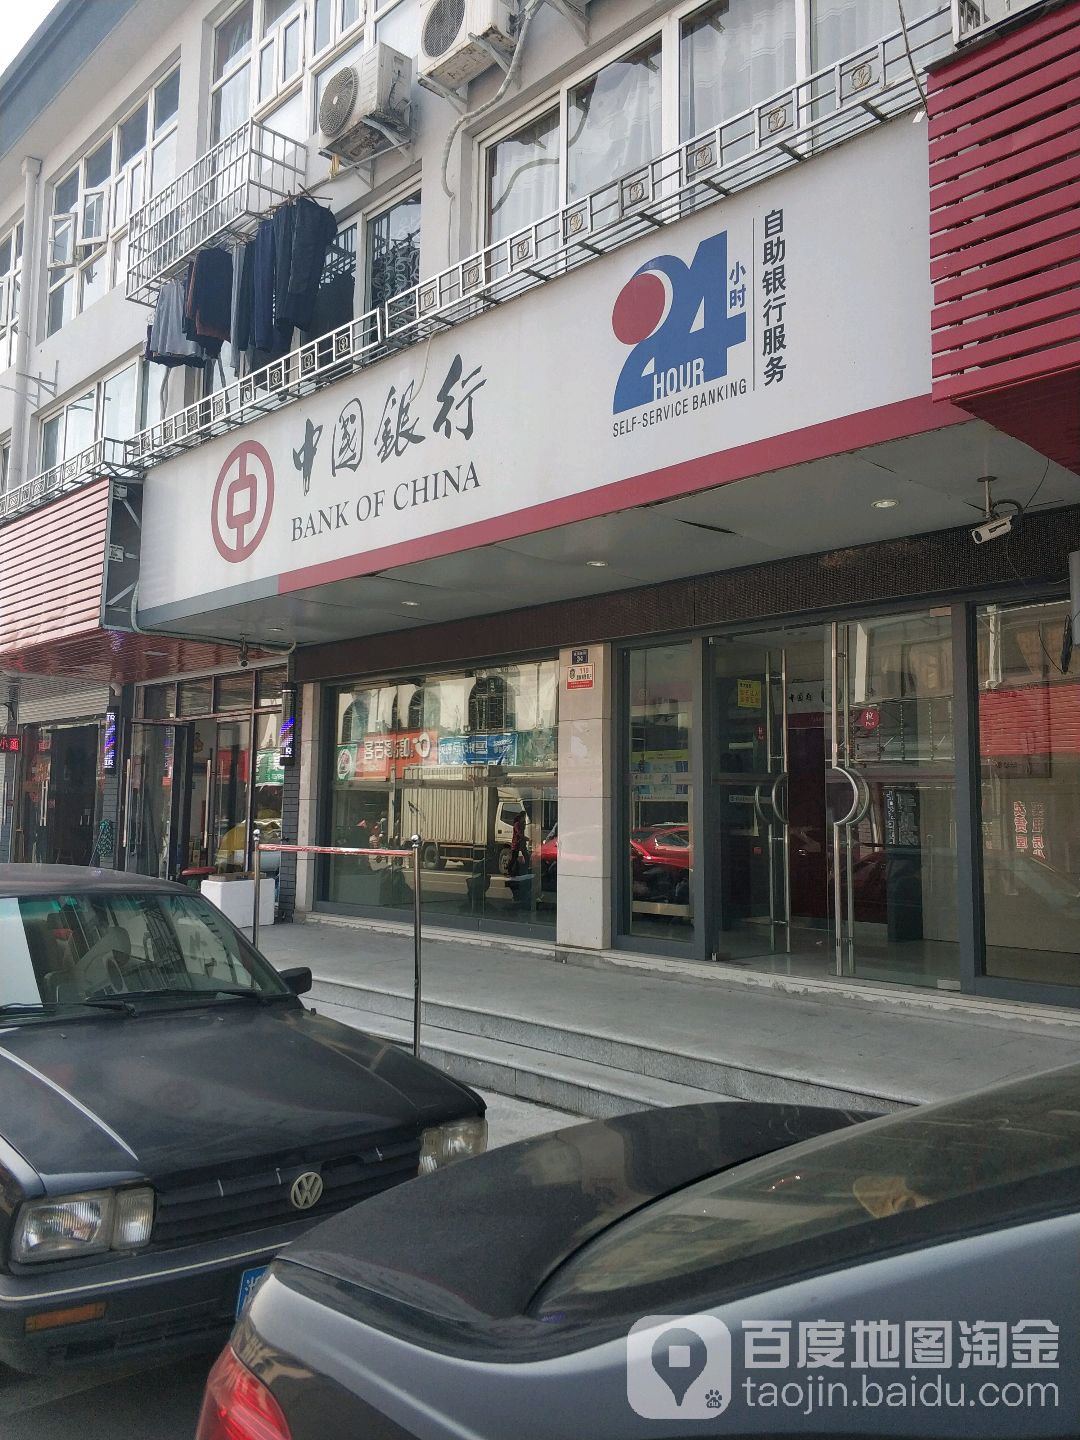 中國銀行24小時自助銀行(橫街鎮衛生院東北)